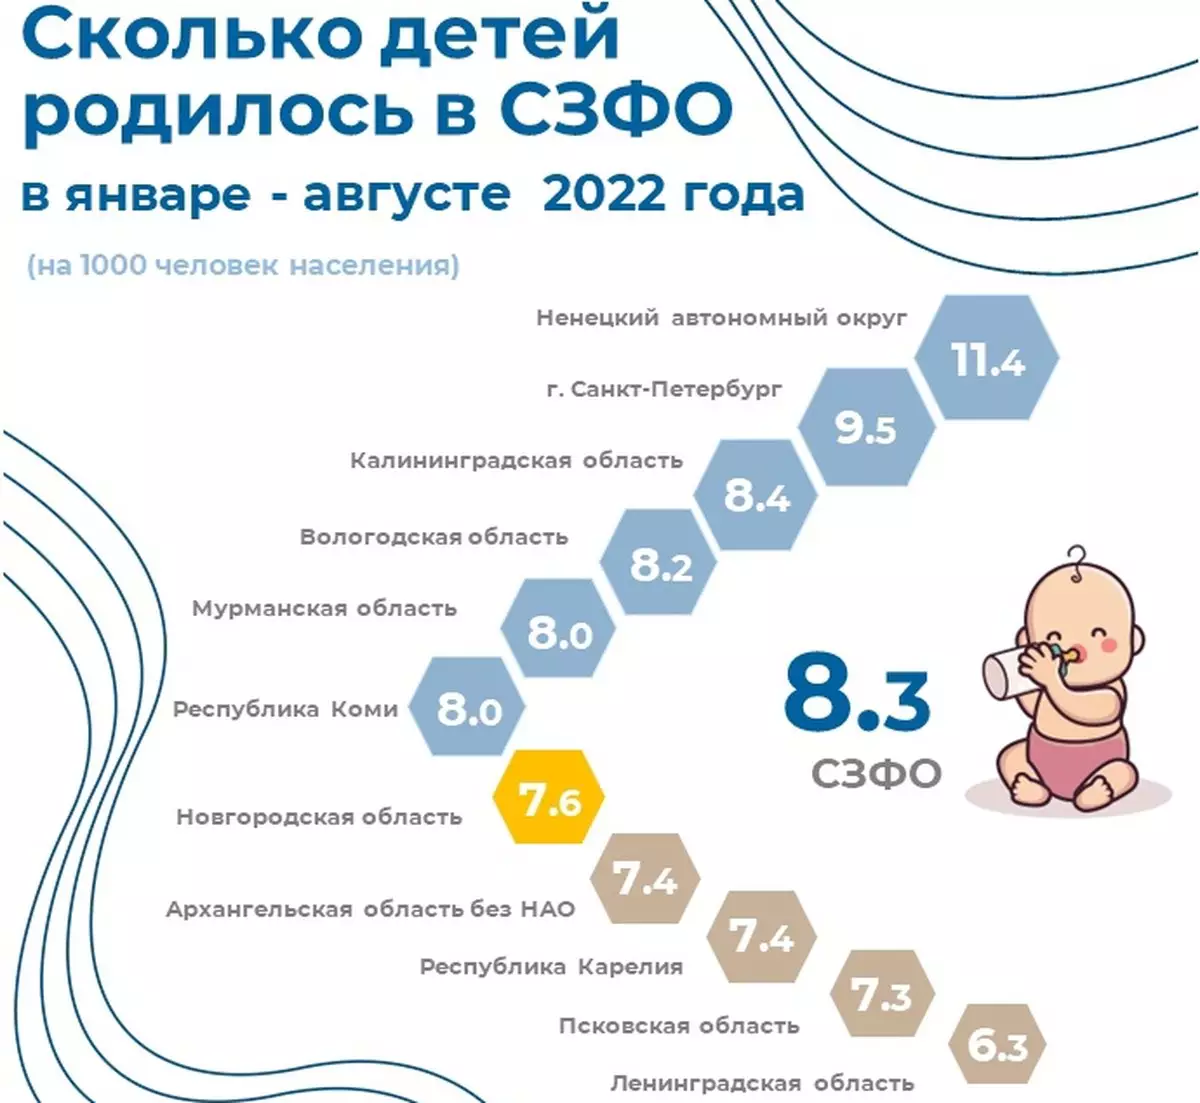 Новгородская область находится на седьмом месте в СЗФО по числу новорожденных на 1000 человек населения.